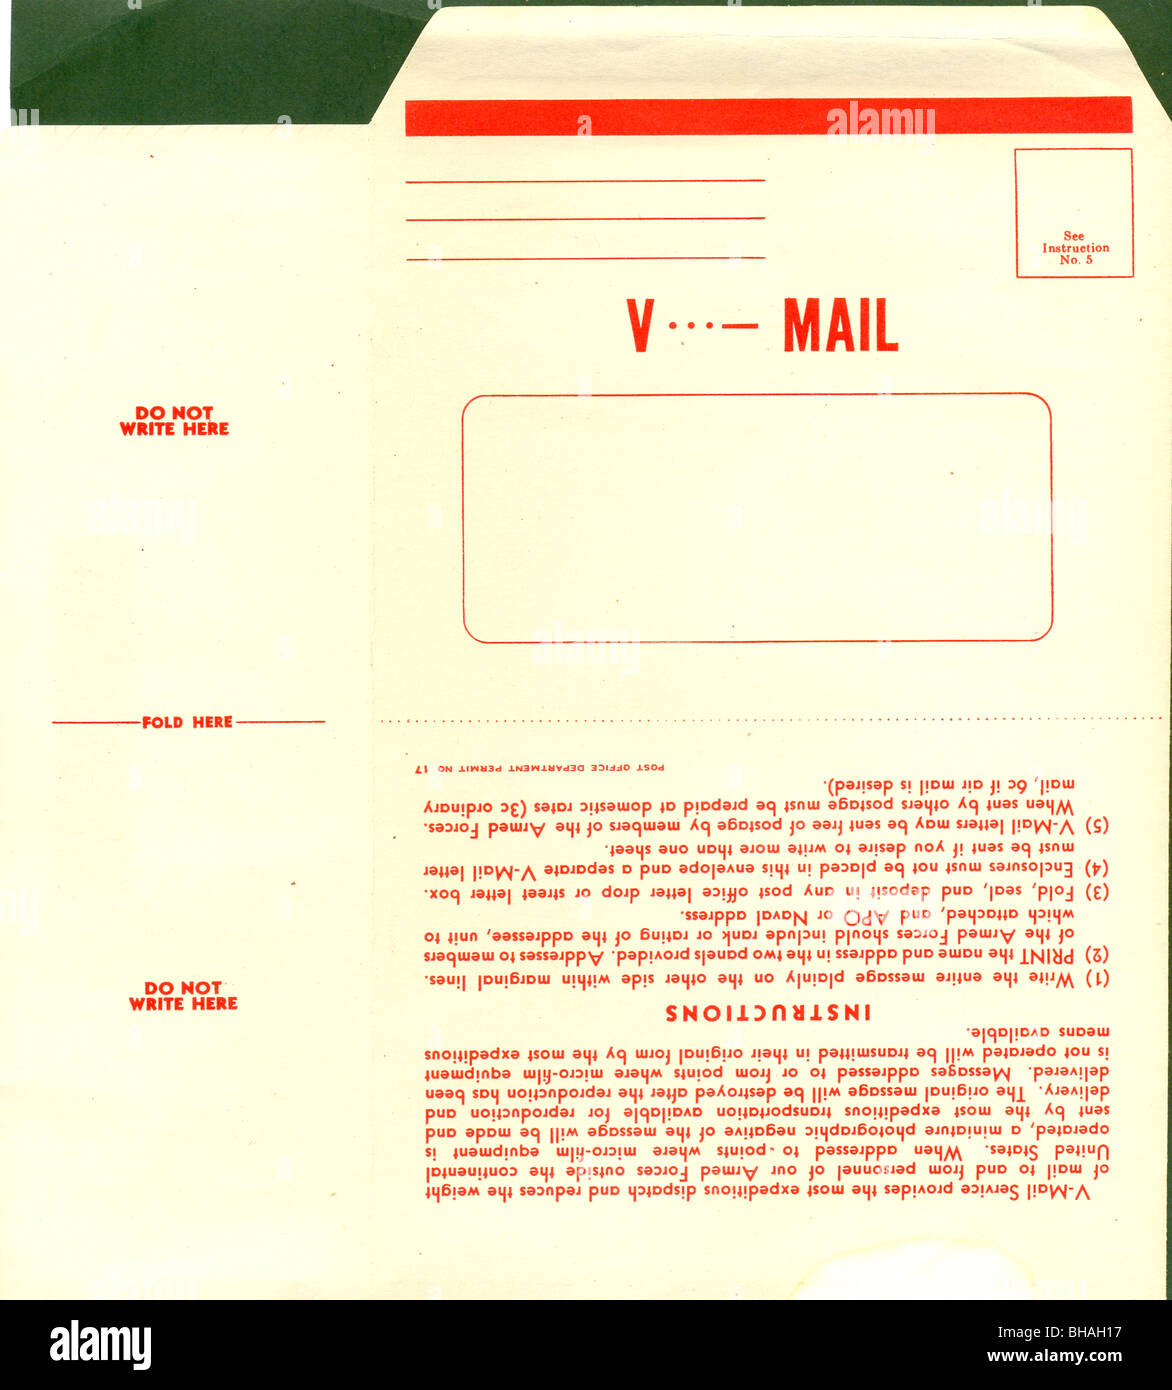 United States V Formulaire de courriel pour les Forces armées d'envoyer free airmail Banque D'Images